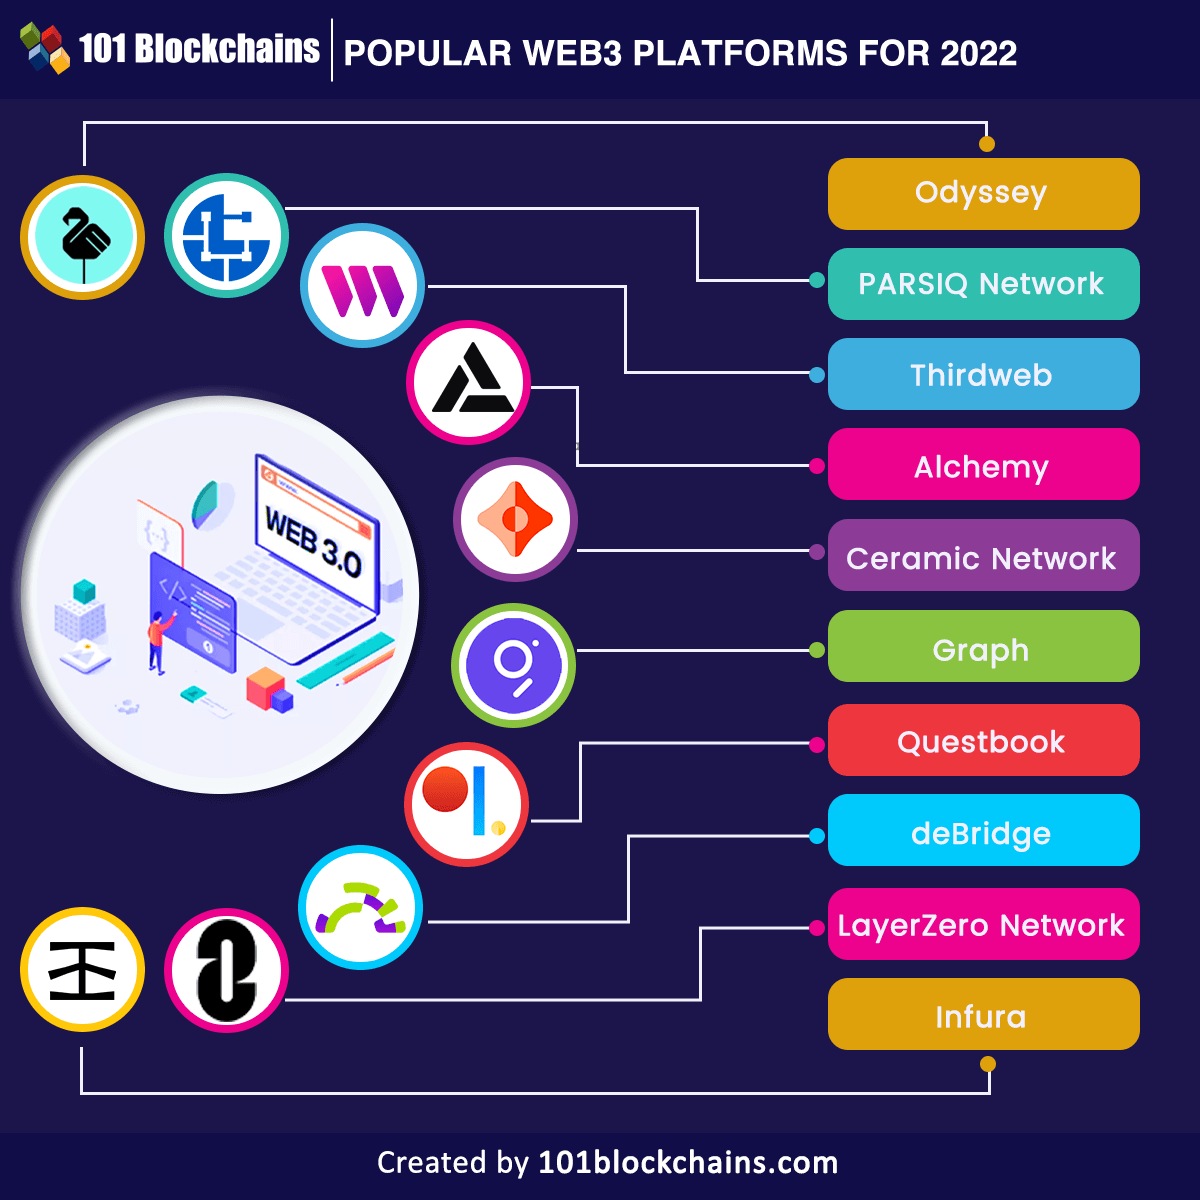 Popular Web3 Platforms for 2022